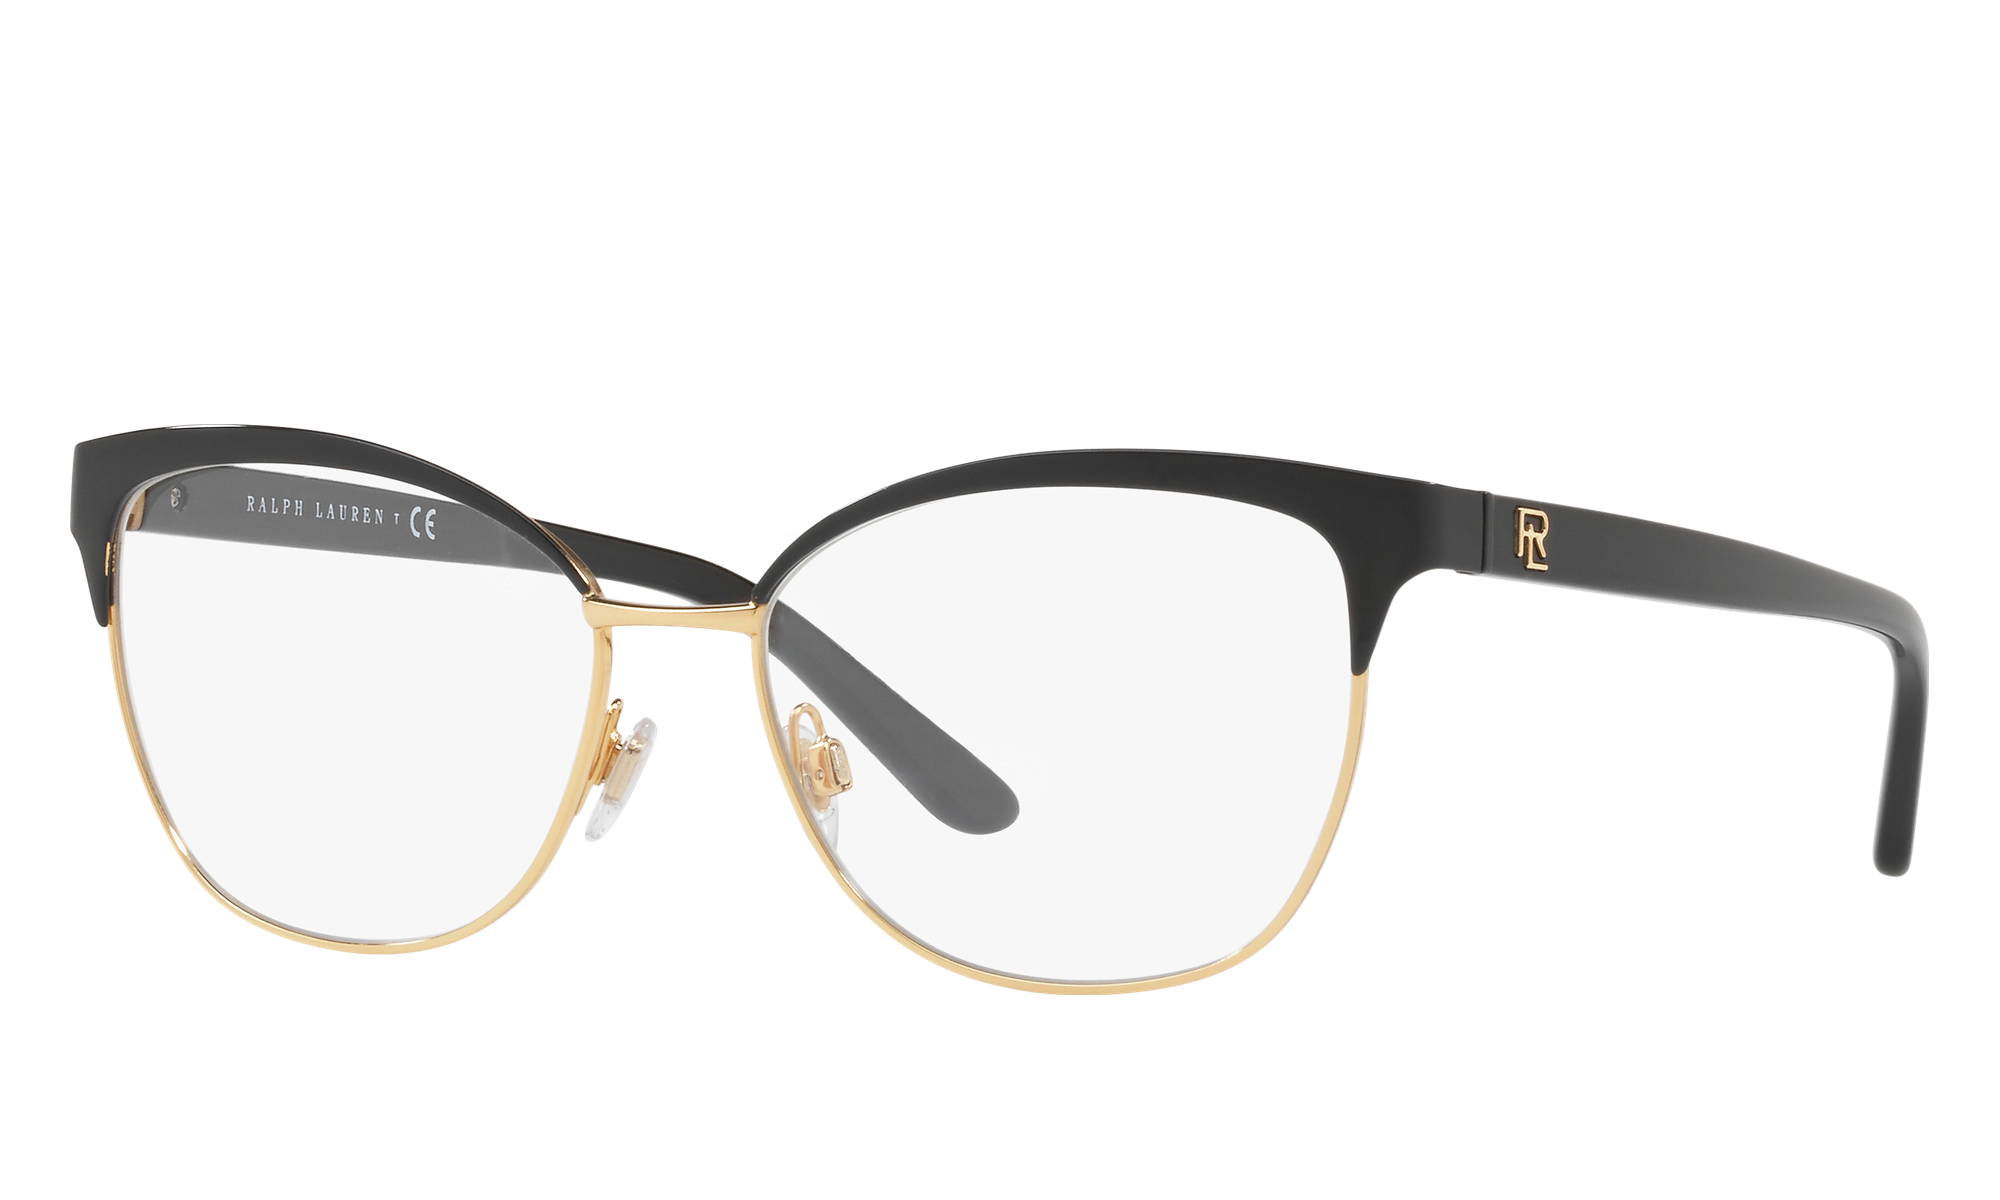 Ralph Lauren RL5099 Shiny Black On Gold Eyeglasses | Glasses.com ...